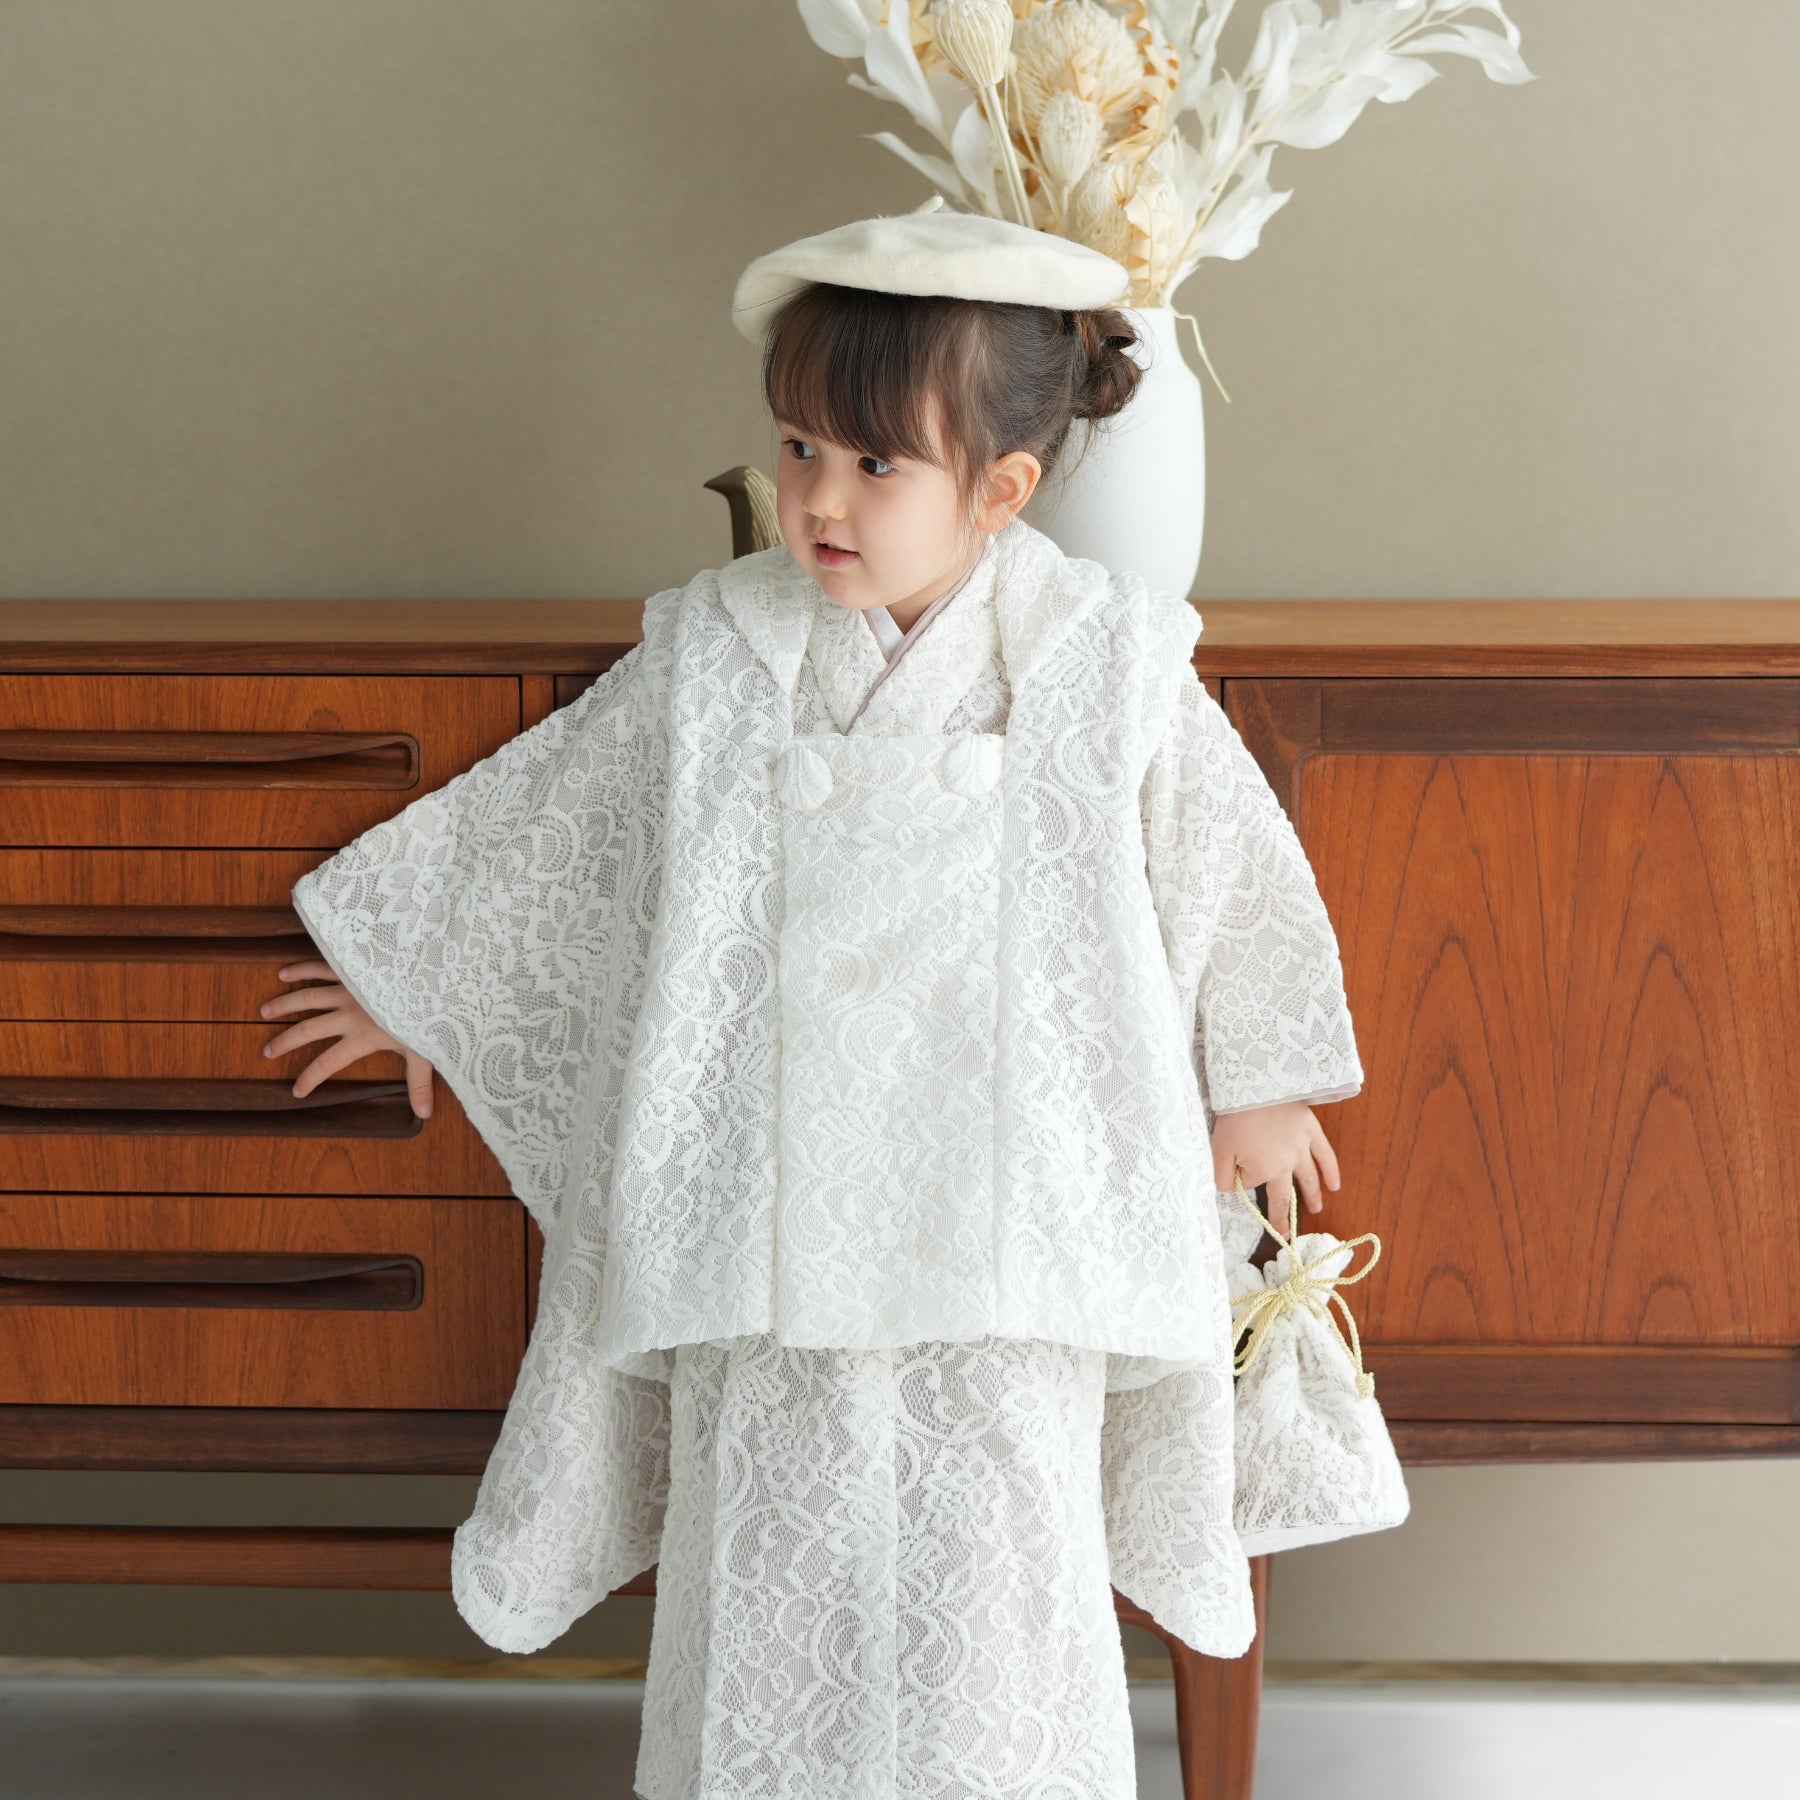 ウタタネ 七五三 女の子 3歳 セット 被布 ベレー帽着物セット - 和服